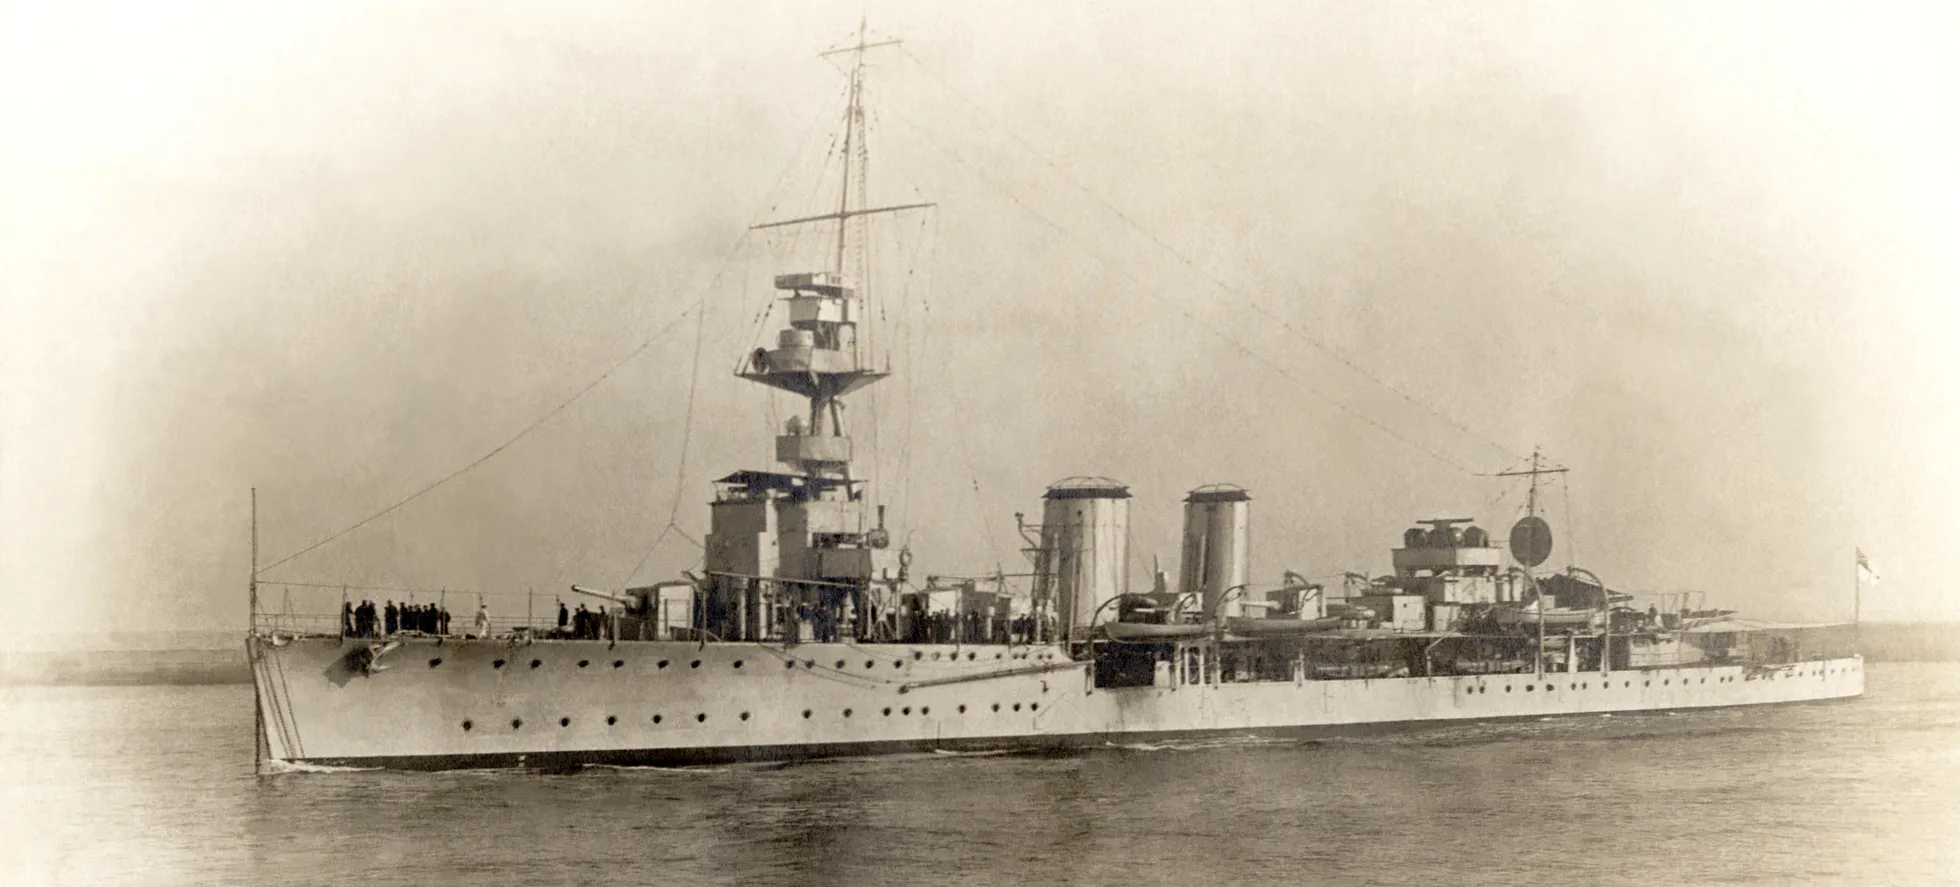 1917. aastal valminud HMS Calypso tuli Eestile Vabadussõtta appi. Briti mereväe teenistuses oli ta kuni 1940. aastani, mil ta uppus Itaalia allveelaeva torpeedorünnakus.